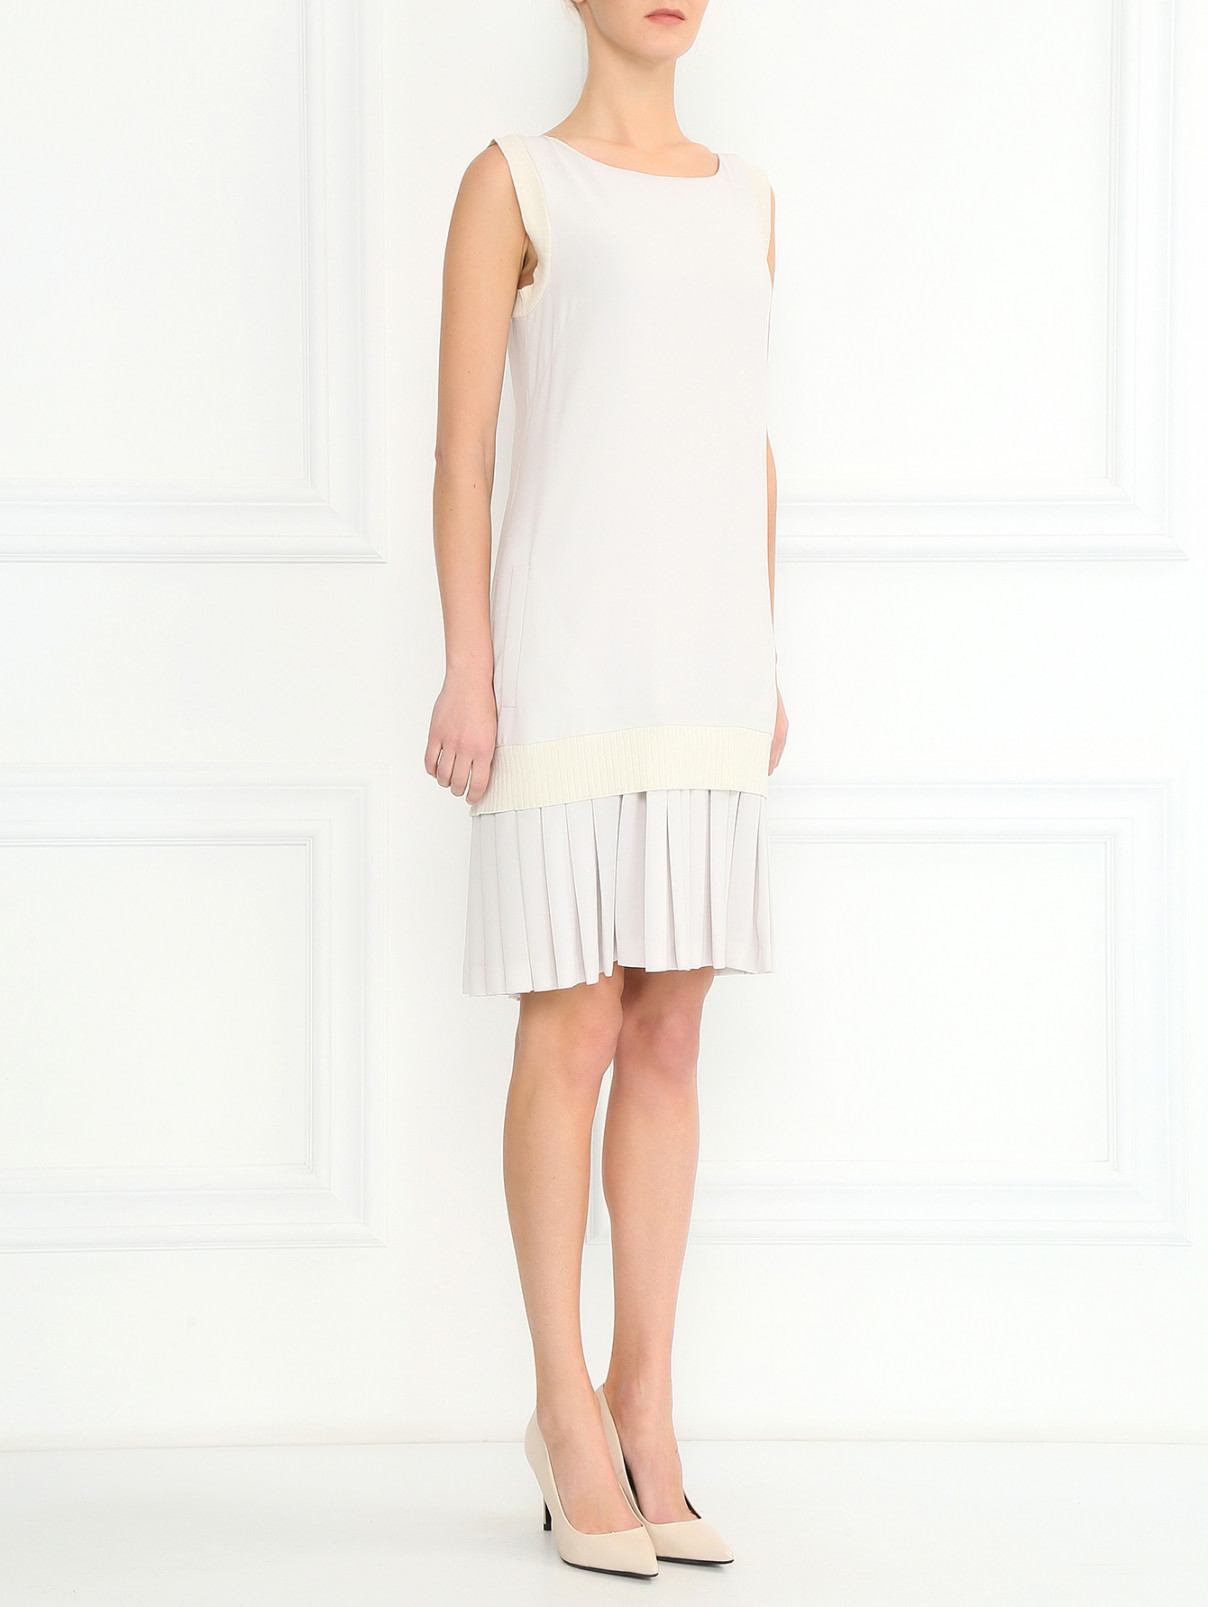 Свободное платье-мини с плиссировкой и трикотажными вставками Alberta Ferretti  –  Модель Общий вид  – Цвет:  Белый